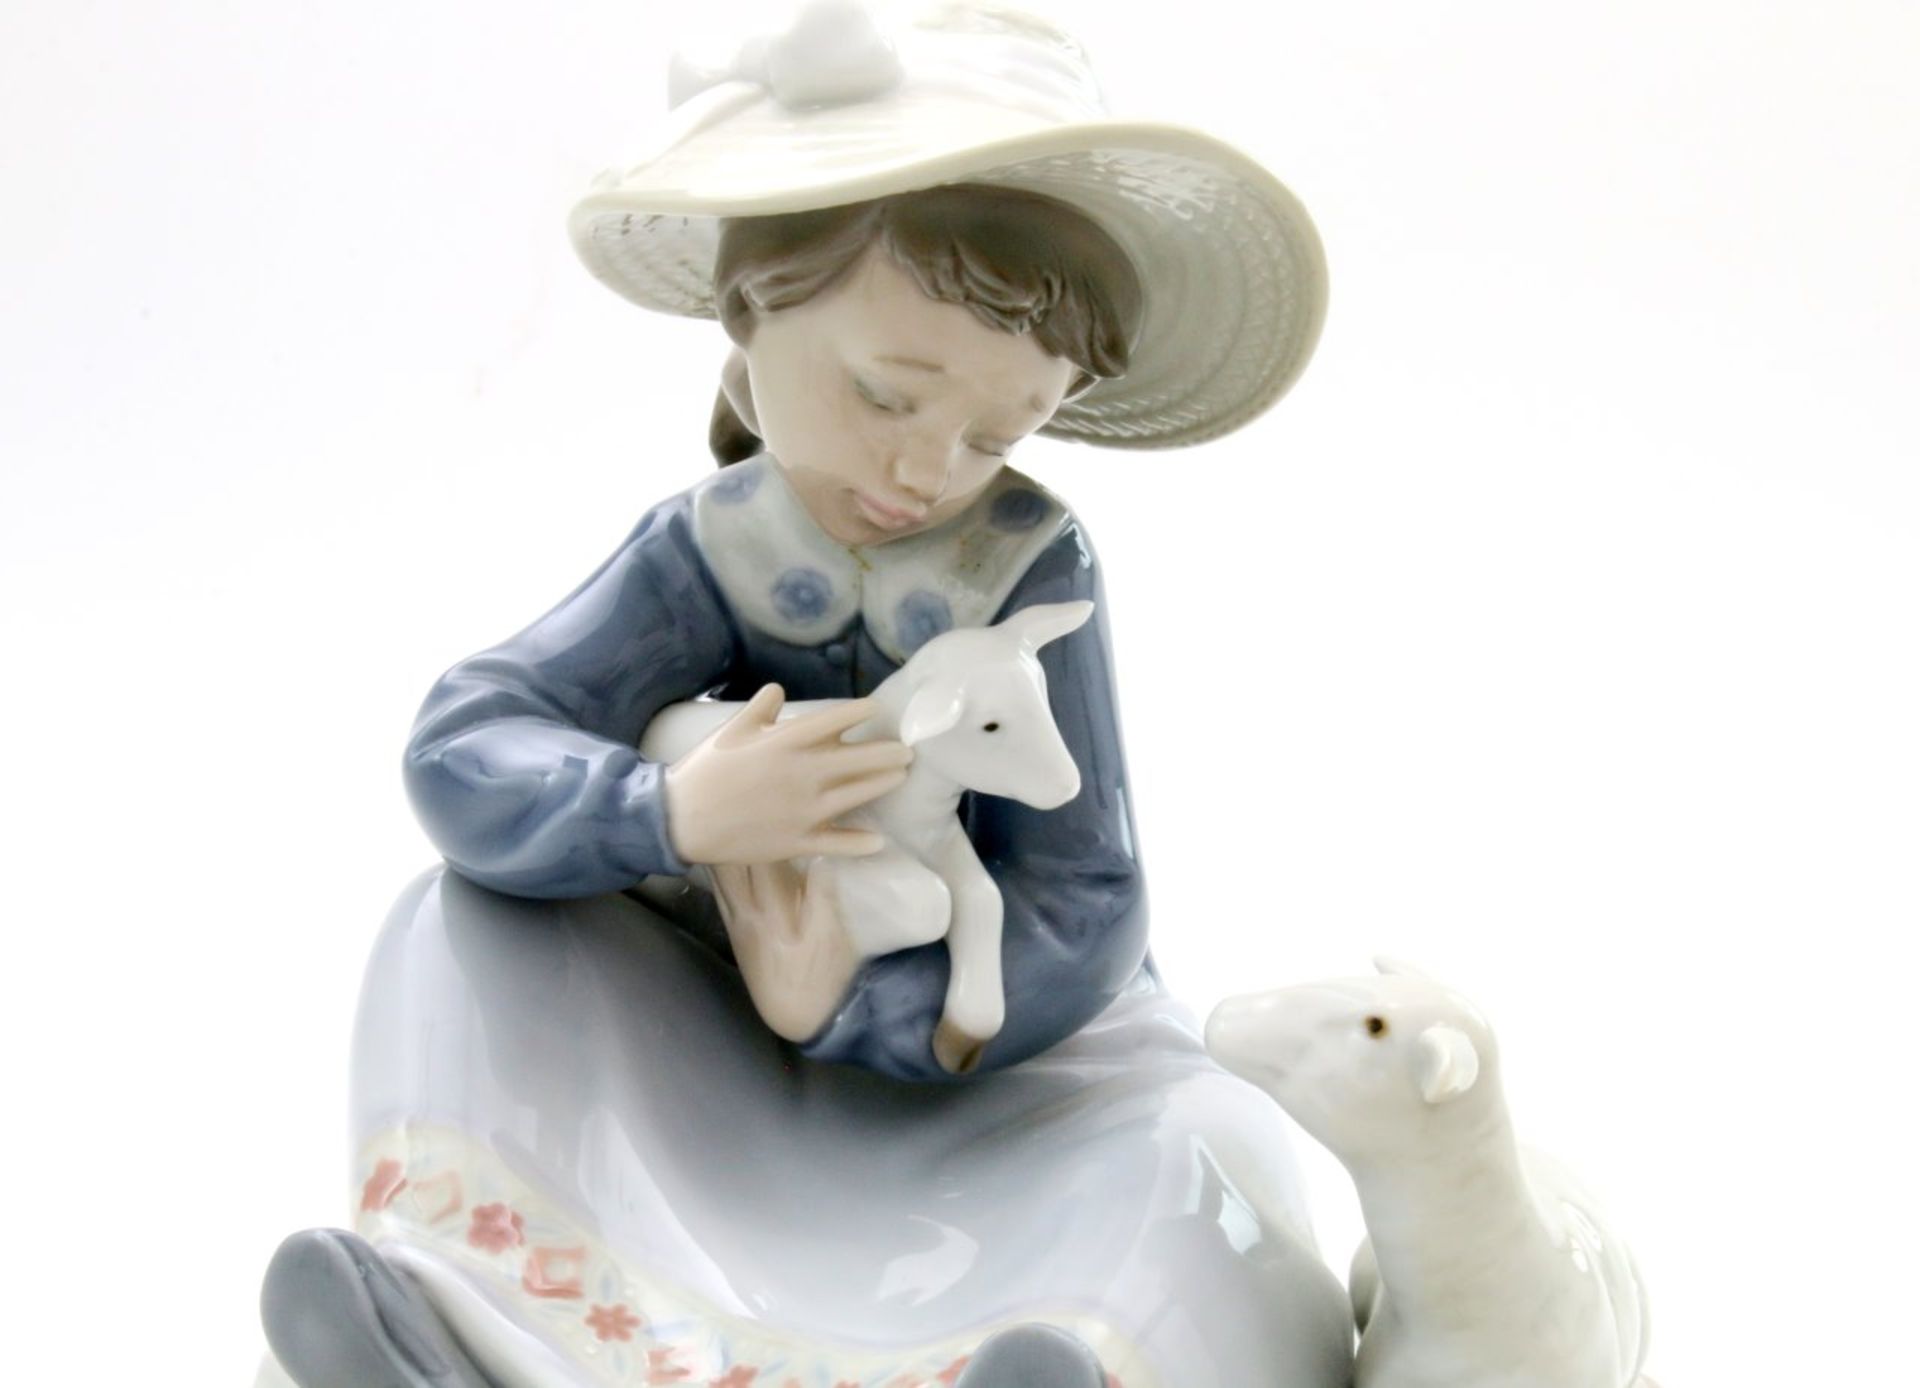 Lladro-Figur "Mädchen mit Lämmern" Nr. 5469, Bestzustand, Form von 1988, Höhe 16 cm. - Bild 5 aus 7